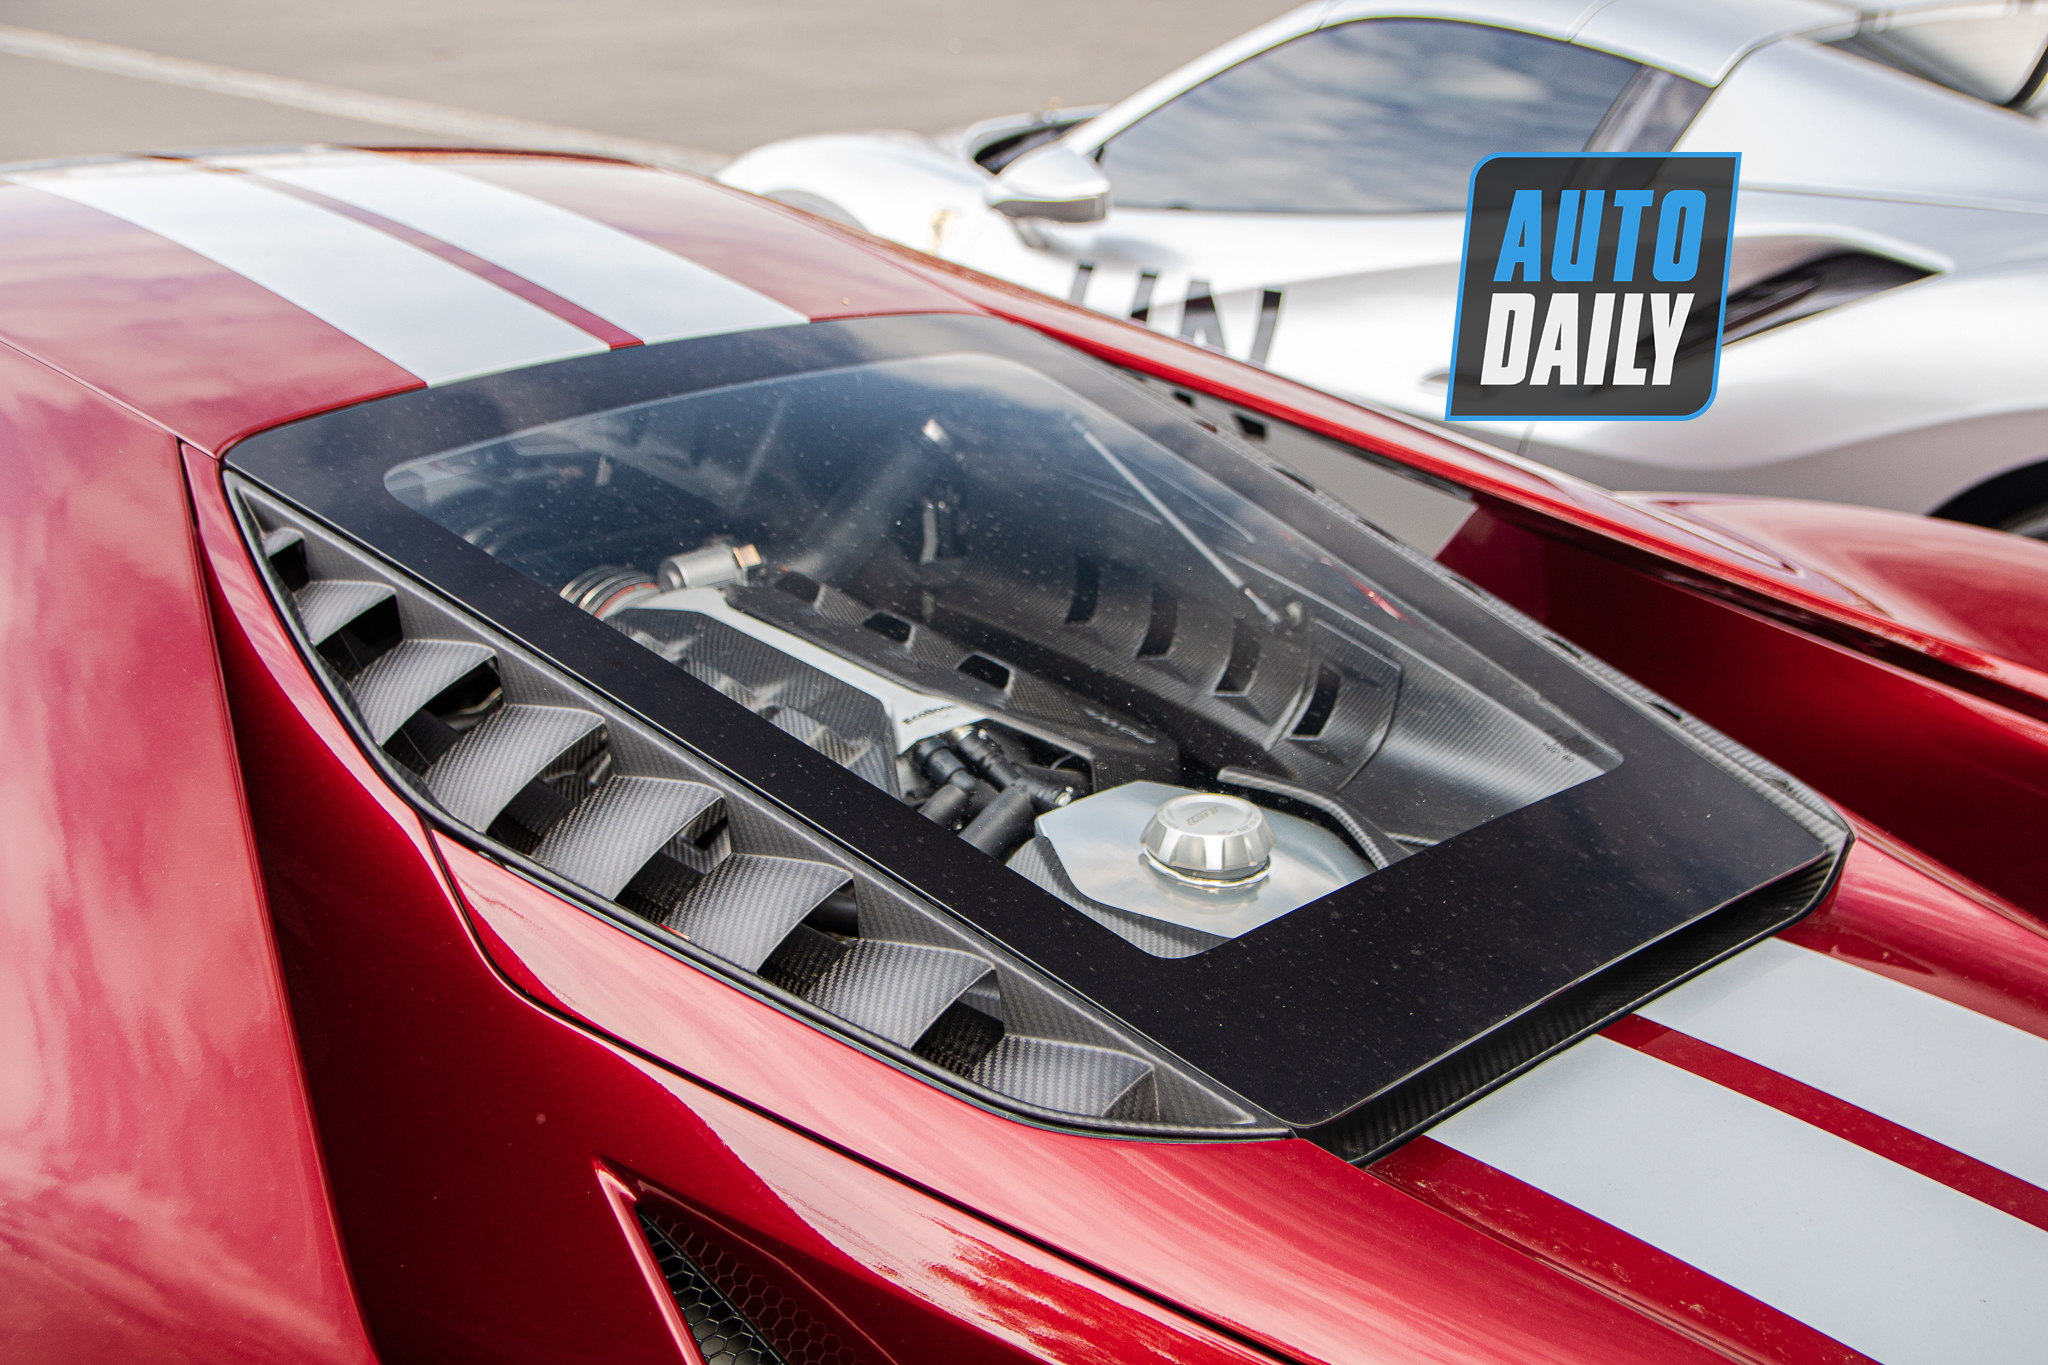 Bắt gặp Ford GT và Ferrari 488 Pista trăm tỷ của ông chủ Trung Nguyên ford-gt-dang-le-nguyen-vu-autodaily-5.JPG